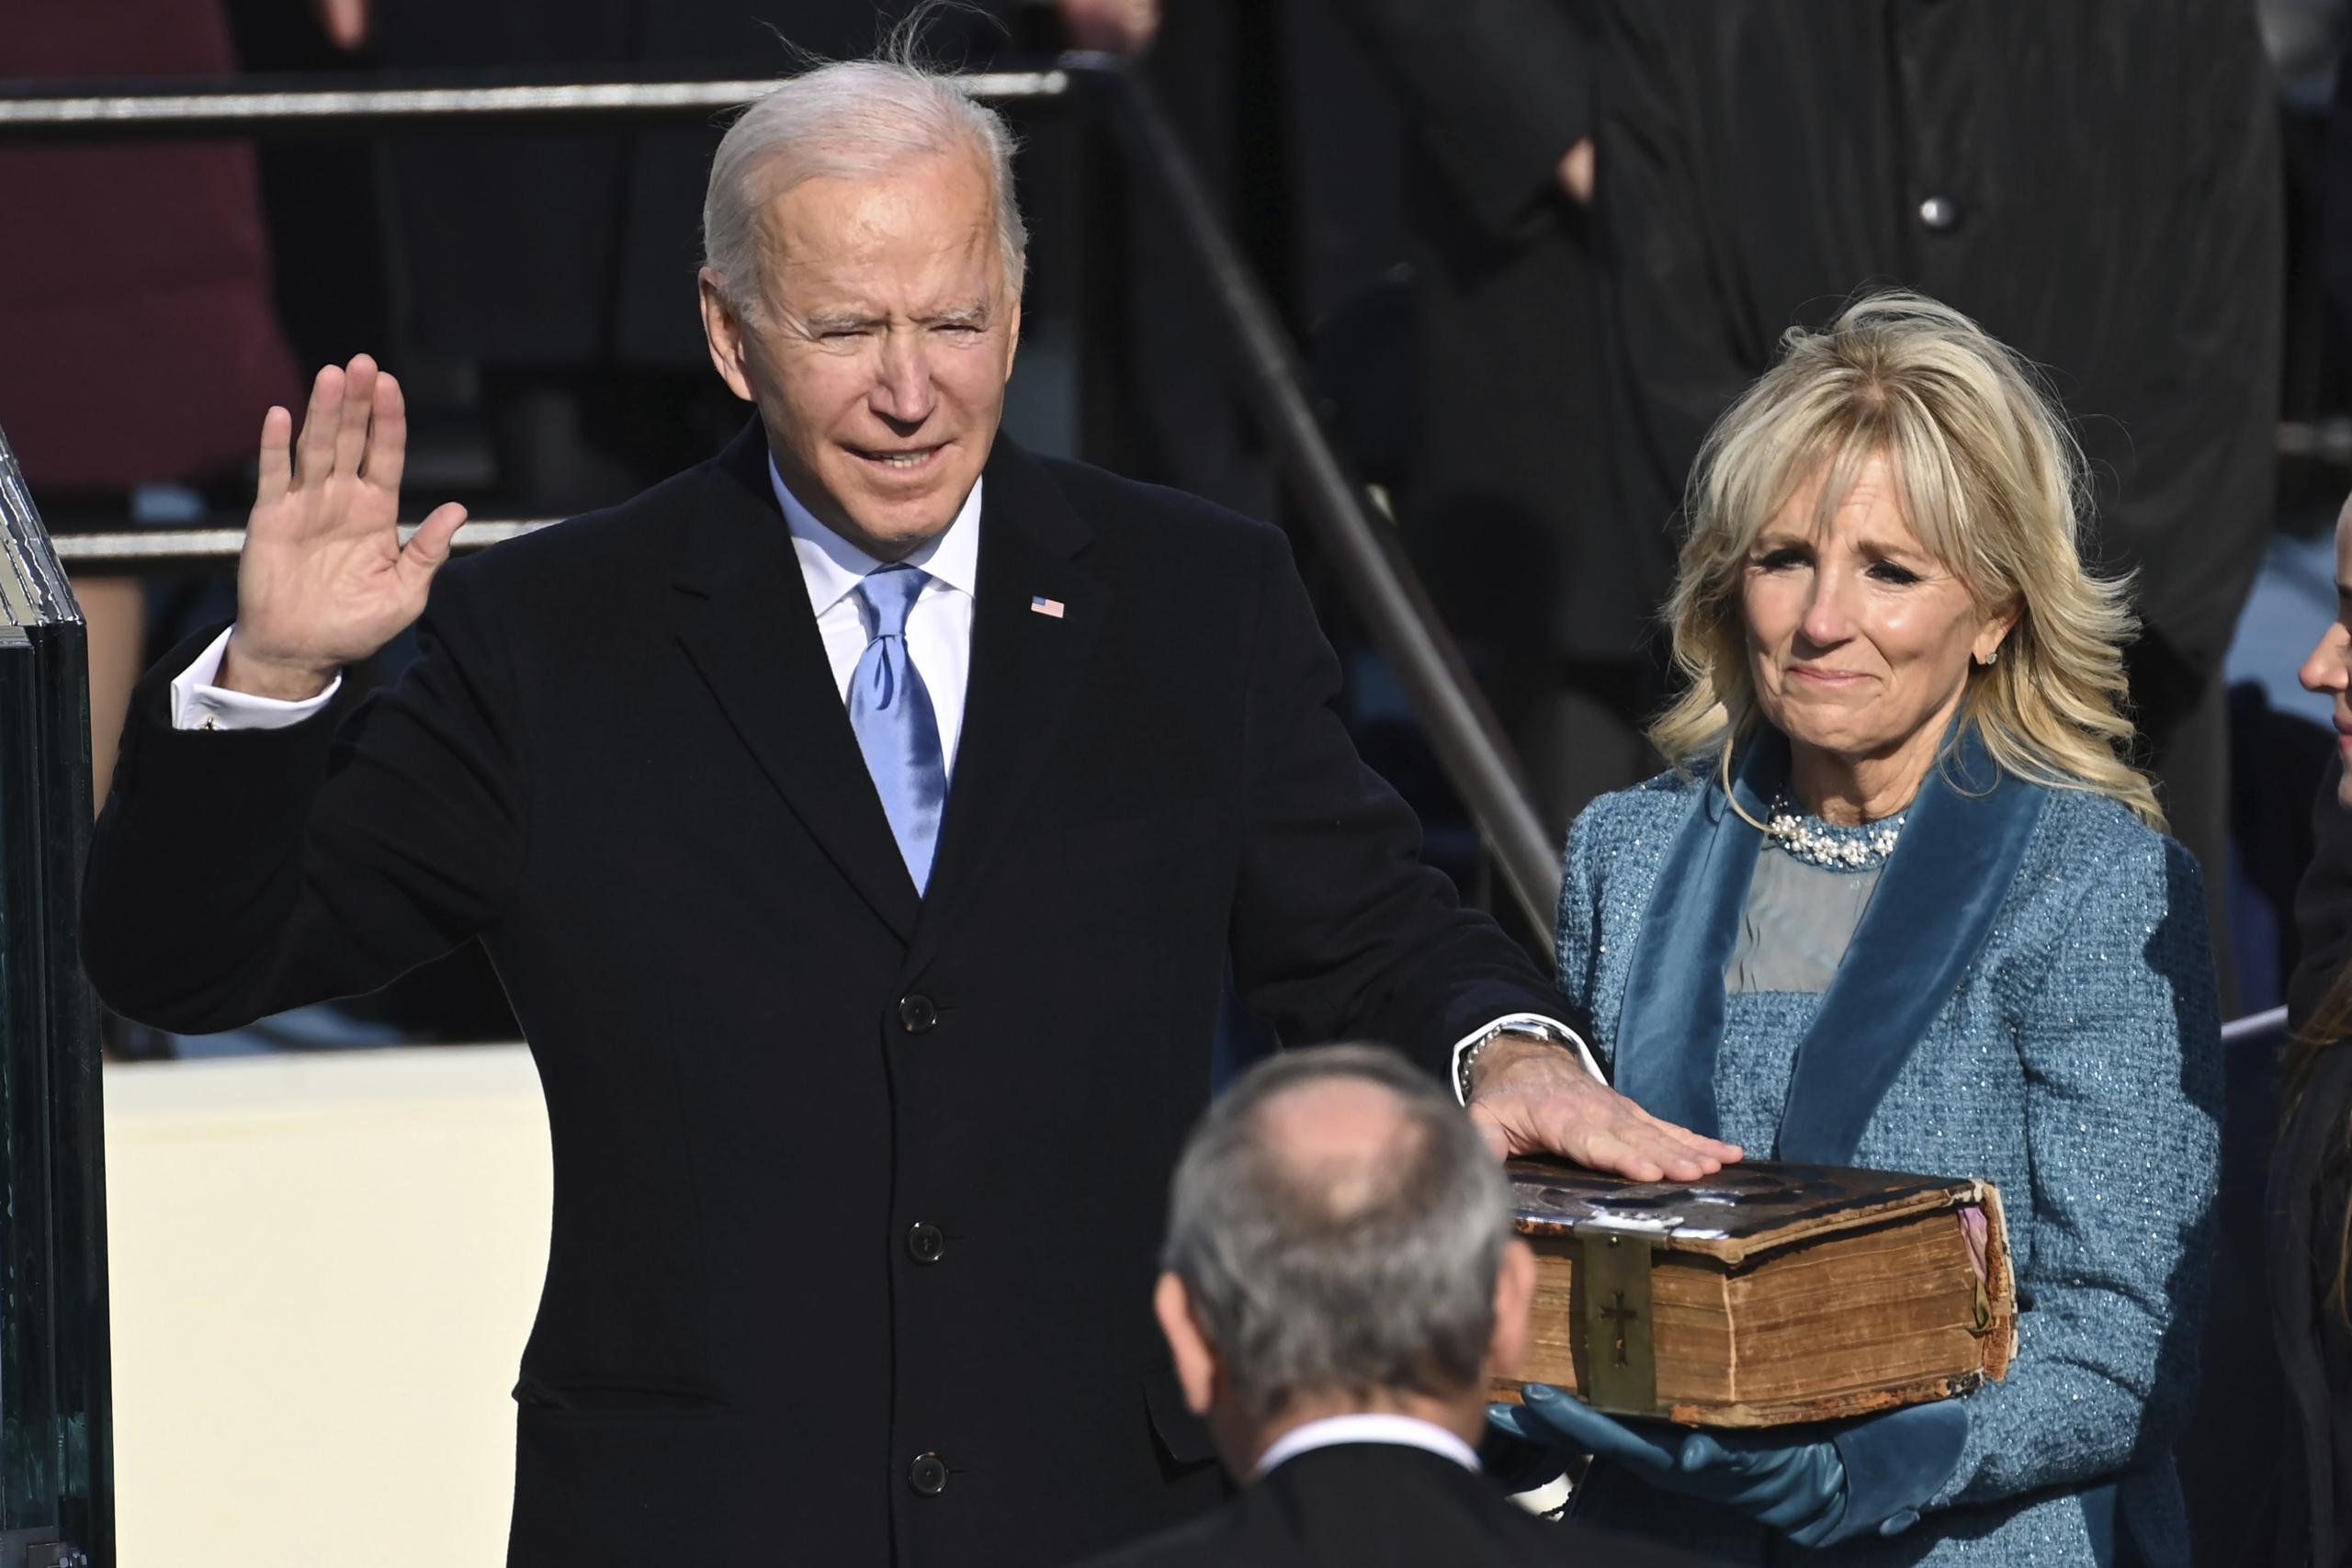 Joe Biden juramentando como presidente de Estados Unidos.